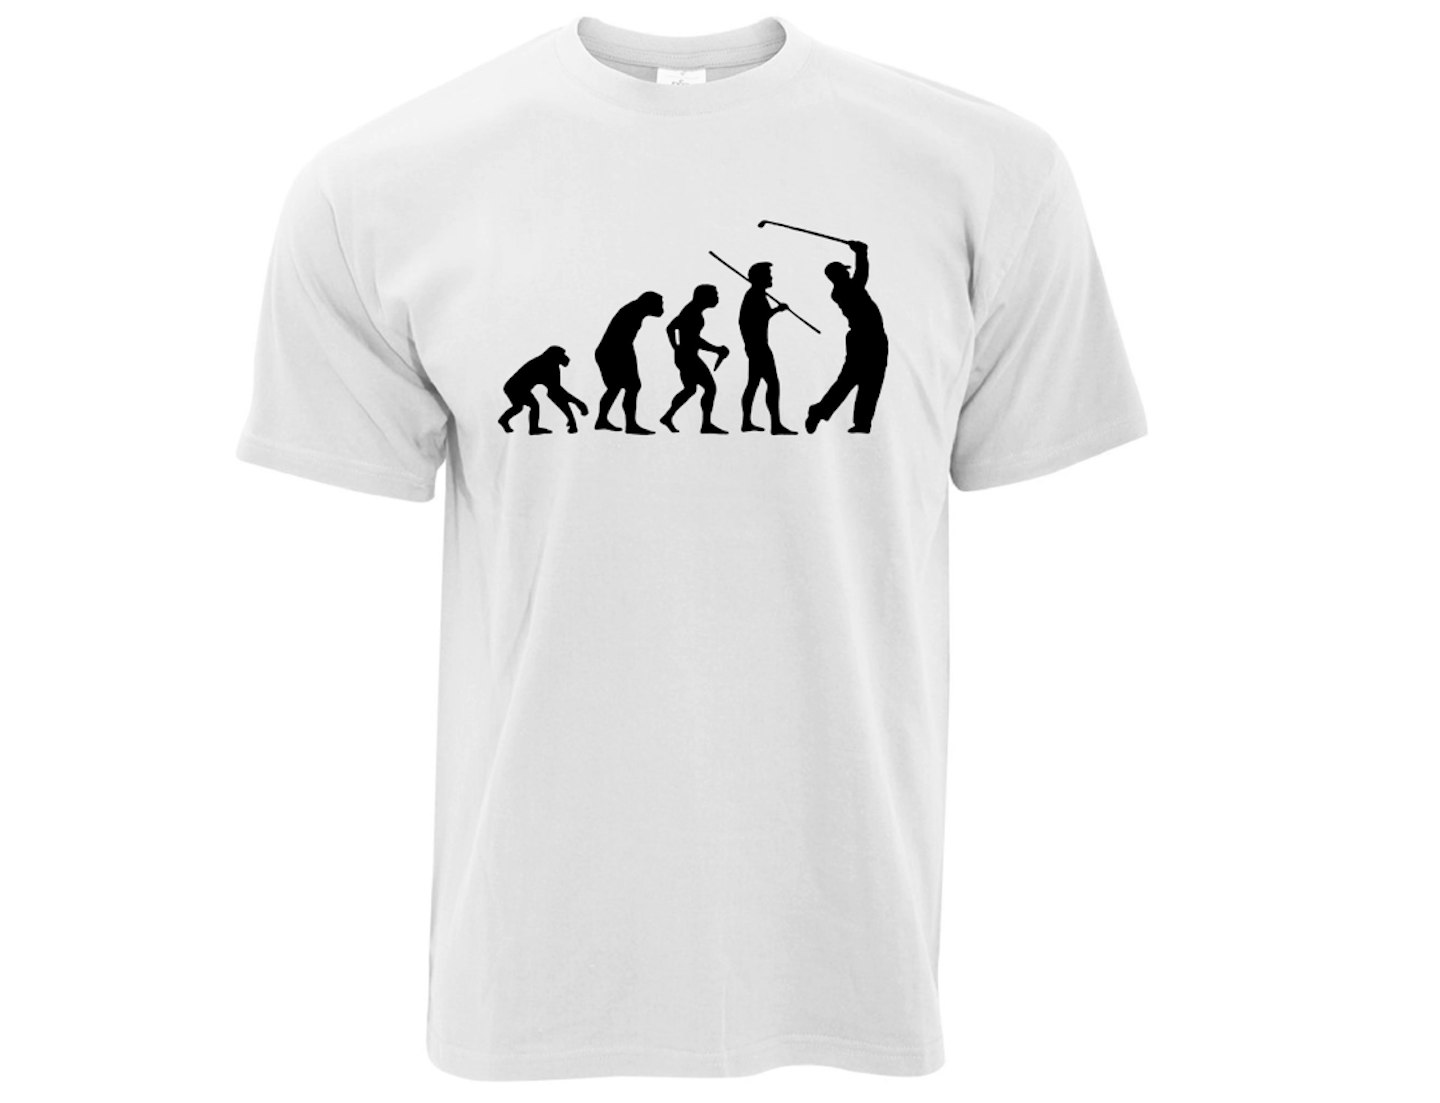 Novelty Golf T-Shirt - Evolution of a Golfer